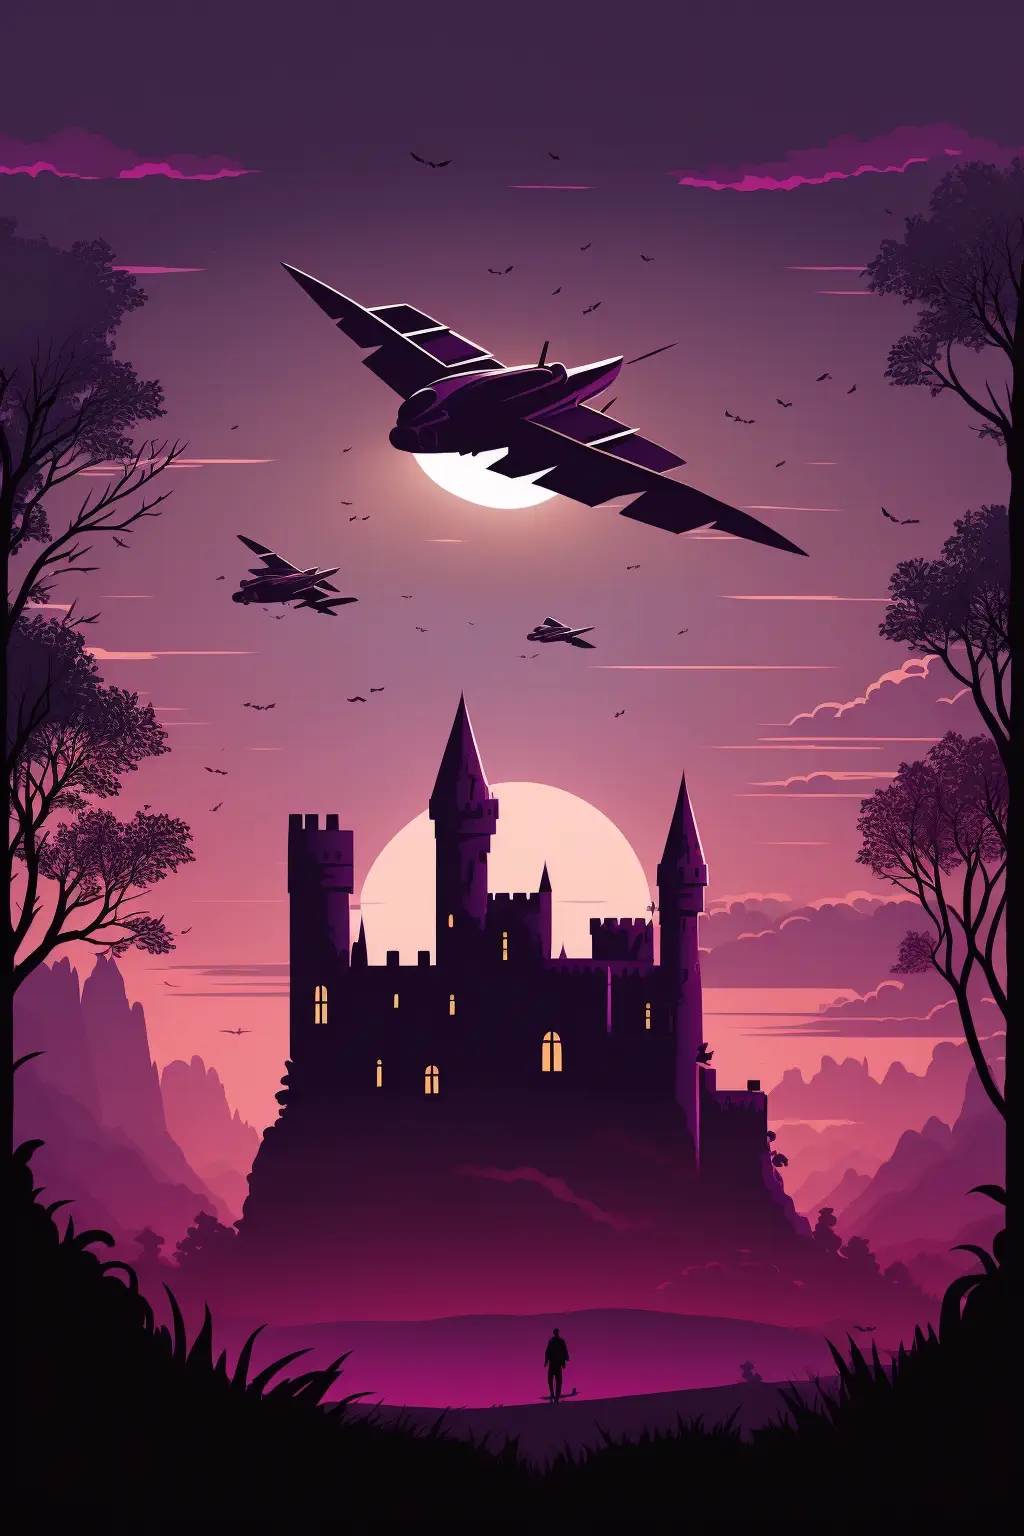 Drakosha_mediale_castle_in_the_background_purple_and_dark_fant_6677d4ce-fc02-4966-ac8f-6c4b33145e37